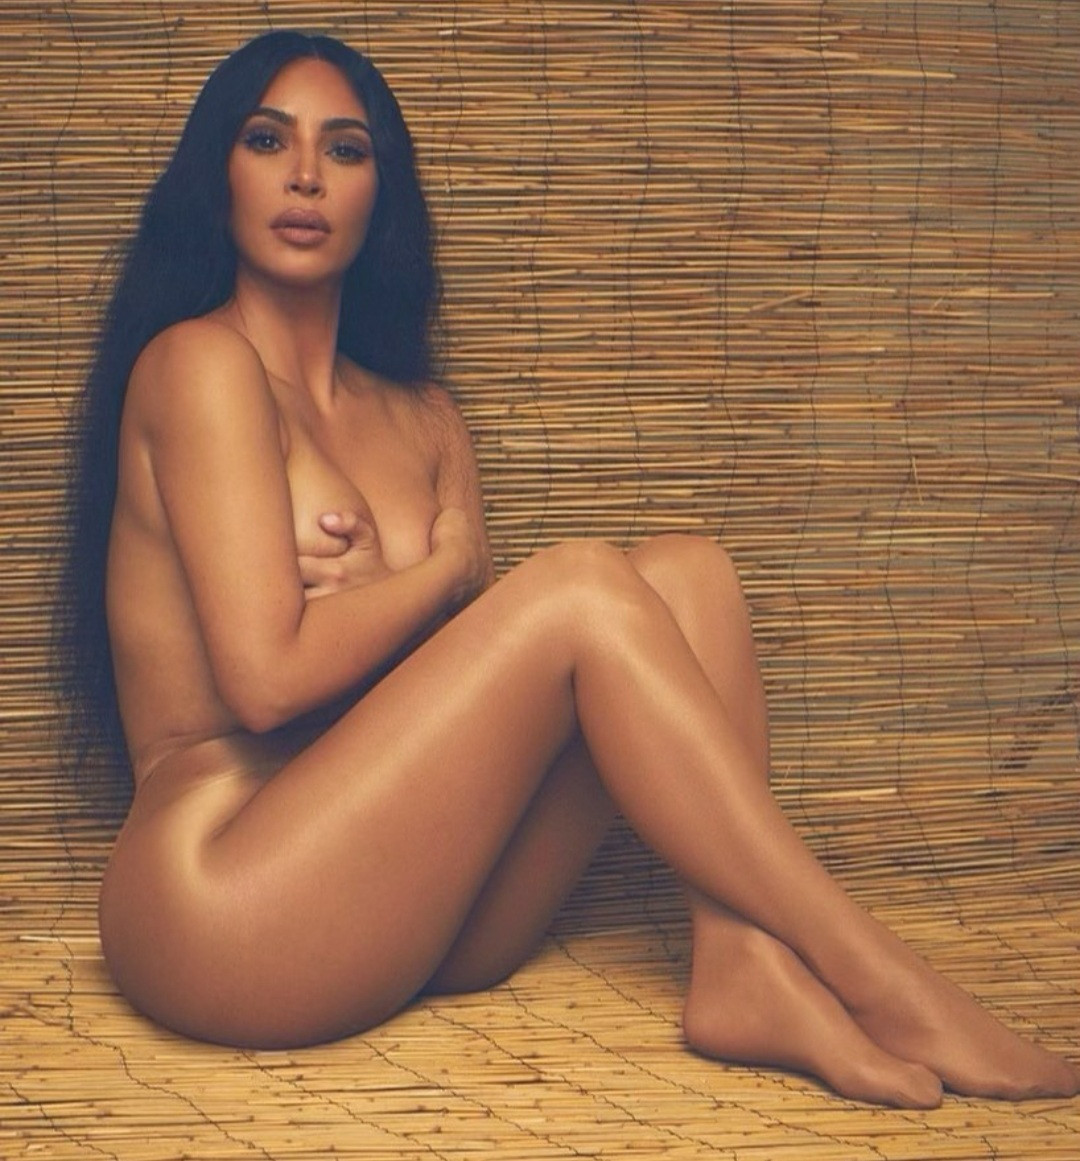 Kim Kardashian in flesh-coloured tights topnaija.ng 1